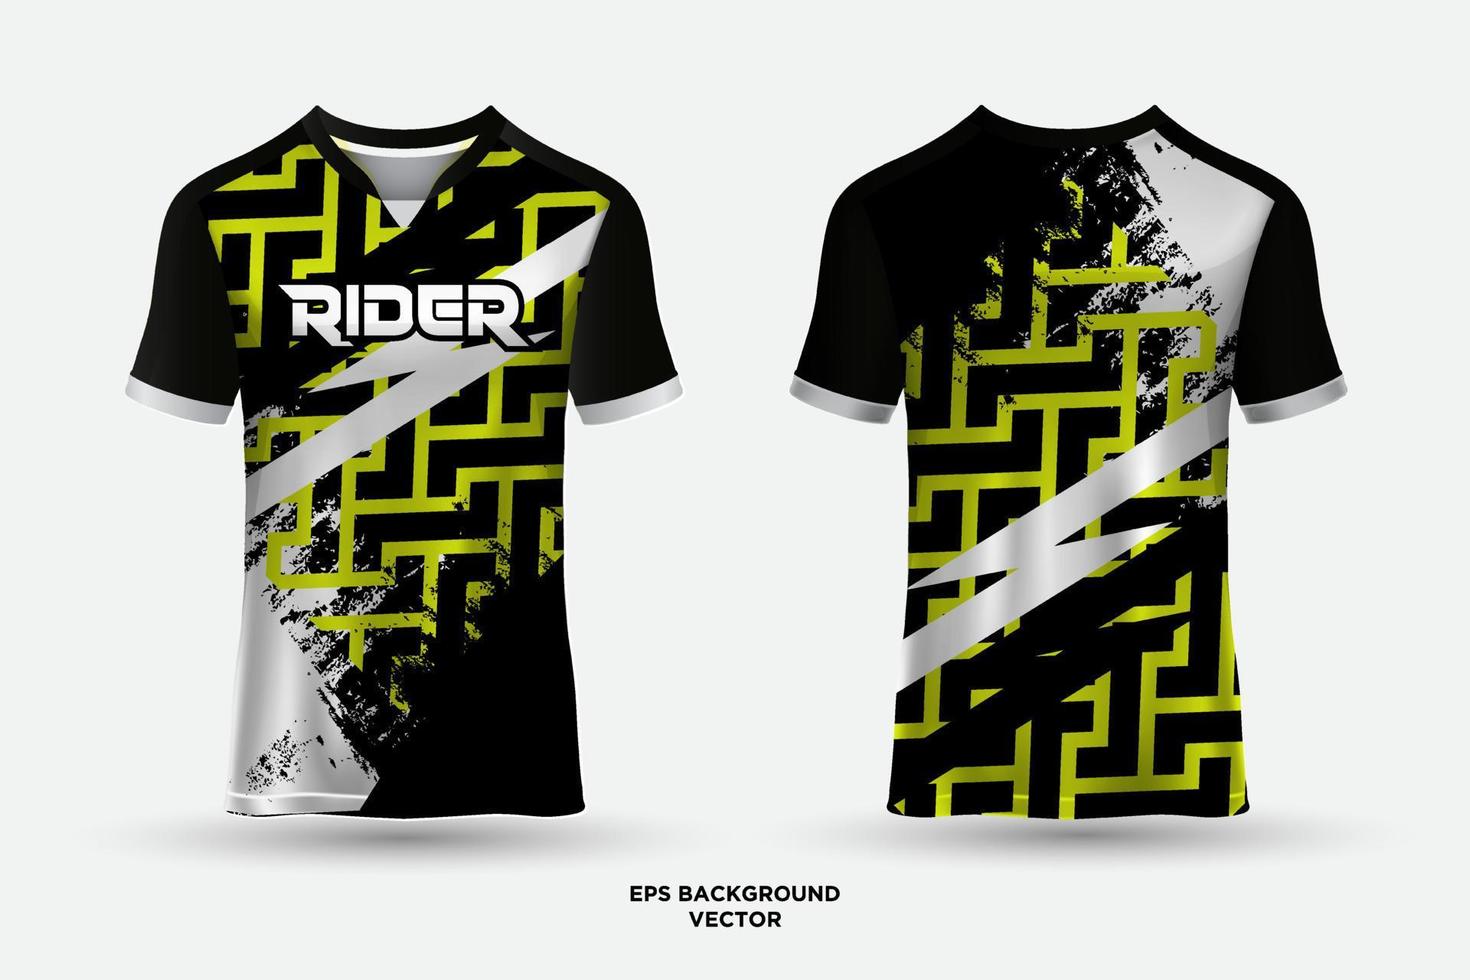 camisa de design futurista e moderno adequada para corrida, futebol, jogos, esportes e ciclismo. vetor